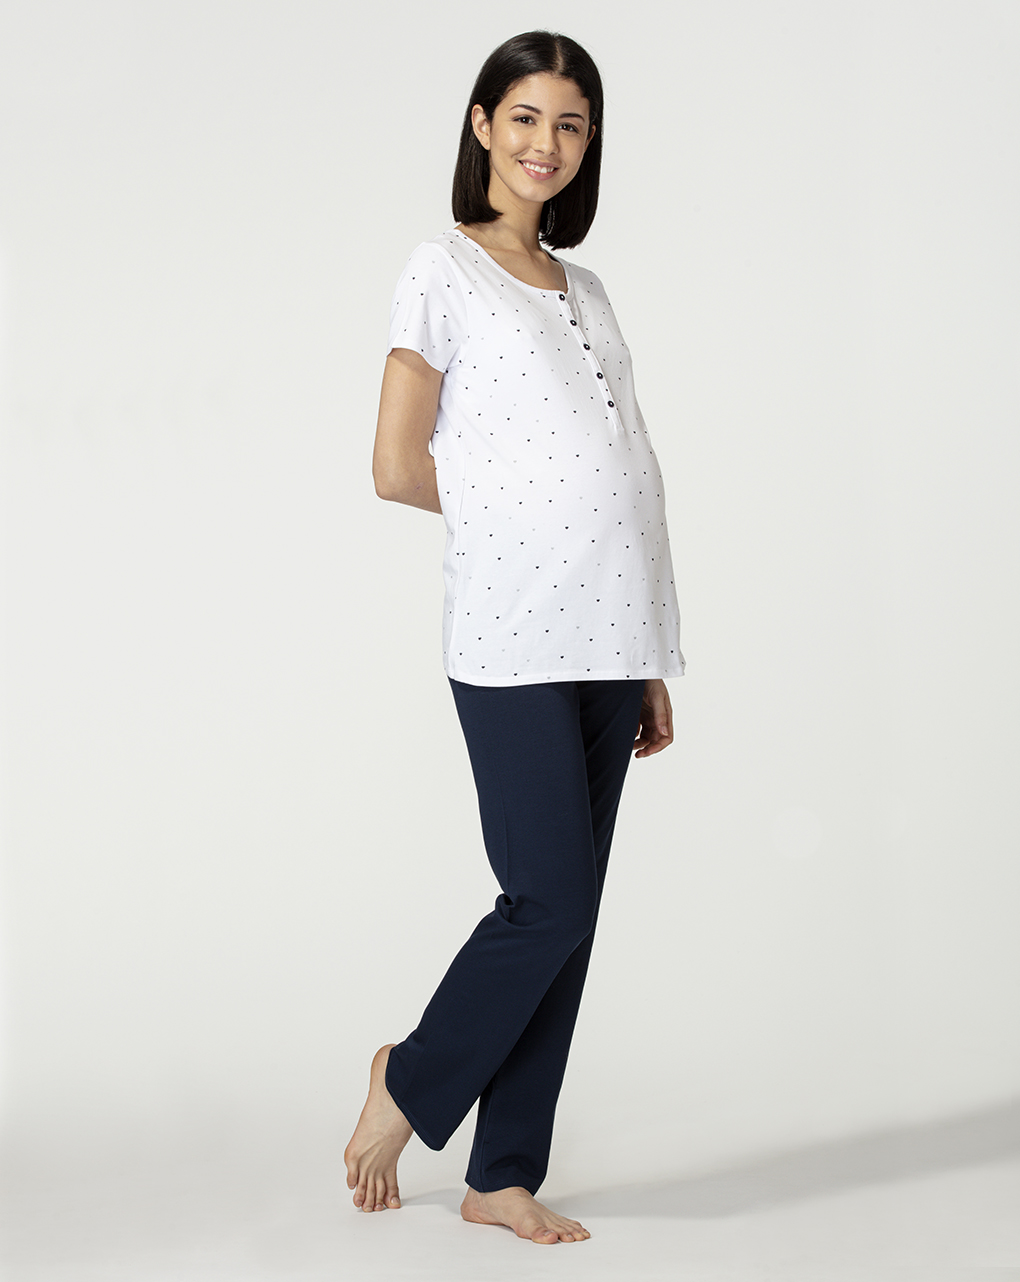 γυναικεία πιτζάμα εγκυμοσύνης/θηλασμού μπλε/λευκό - Prénatal